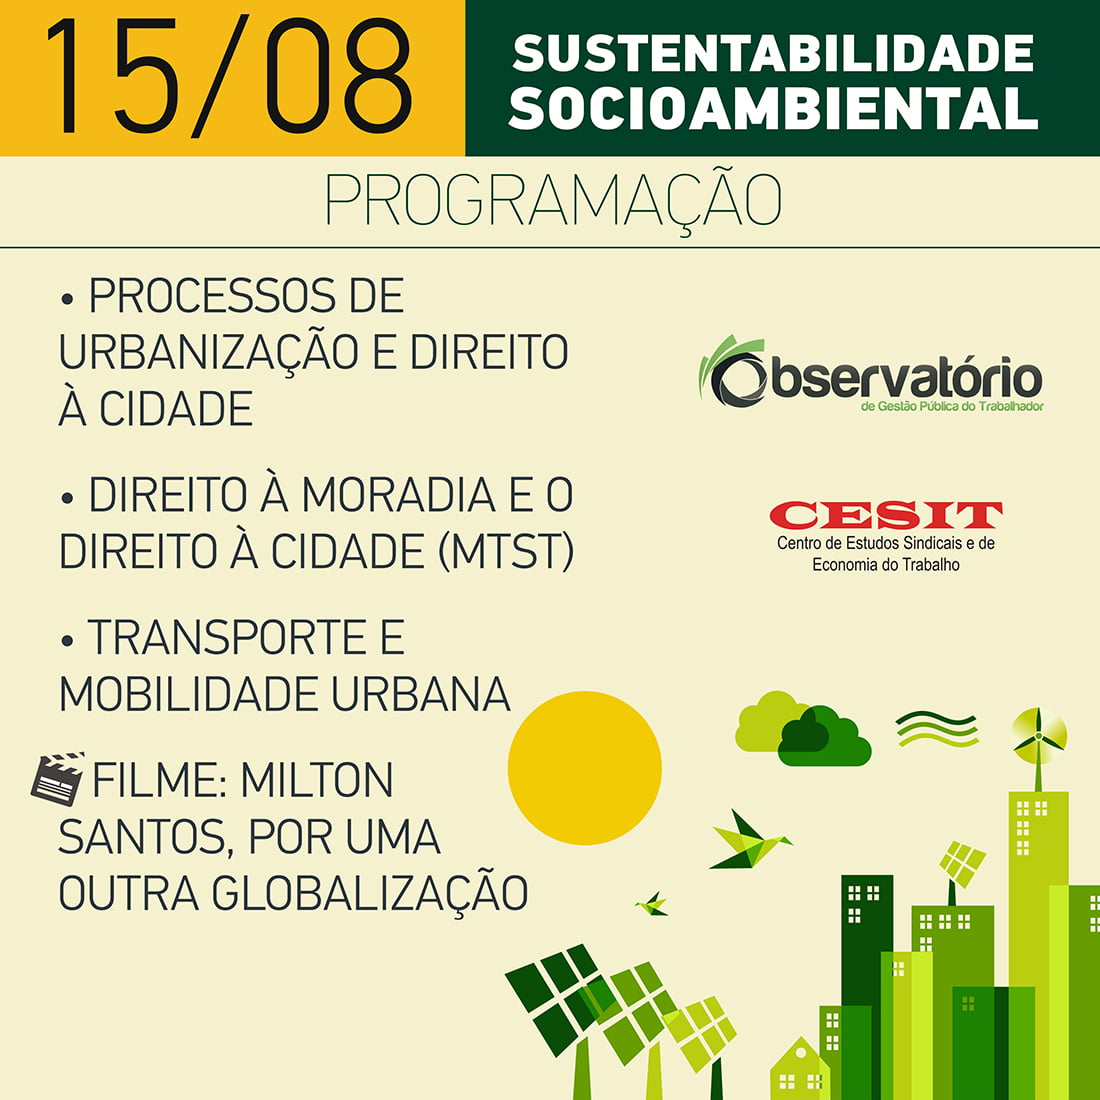 Observatório de Gestão Pública do Trabalhador e Cesit promovem curso de sustentabilidade socioambiental